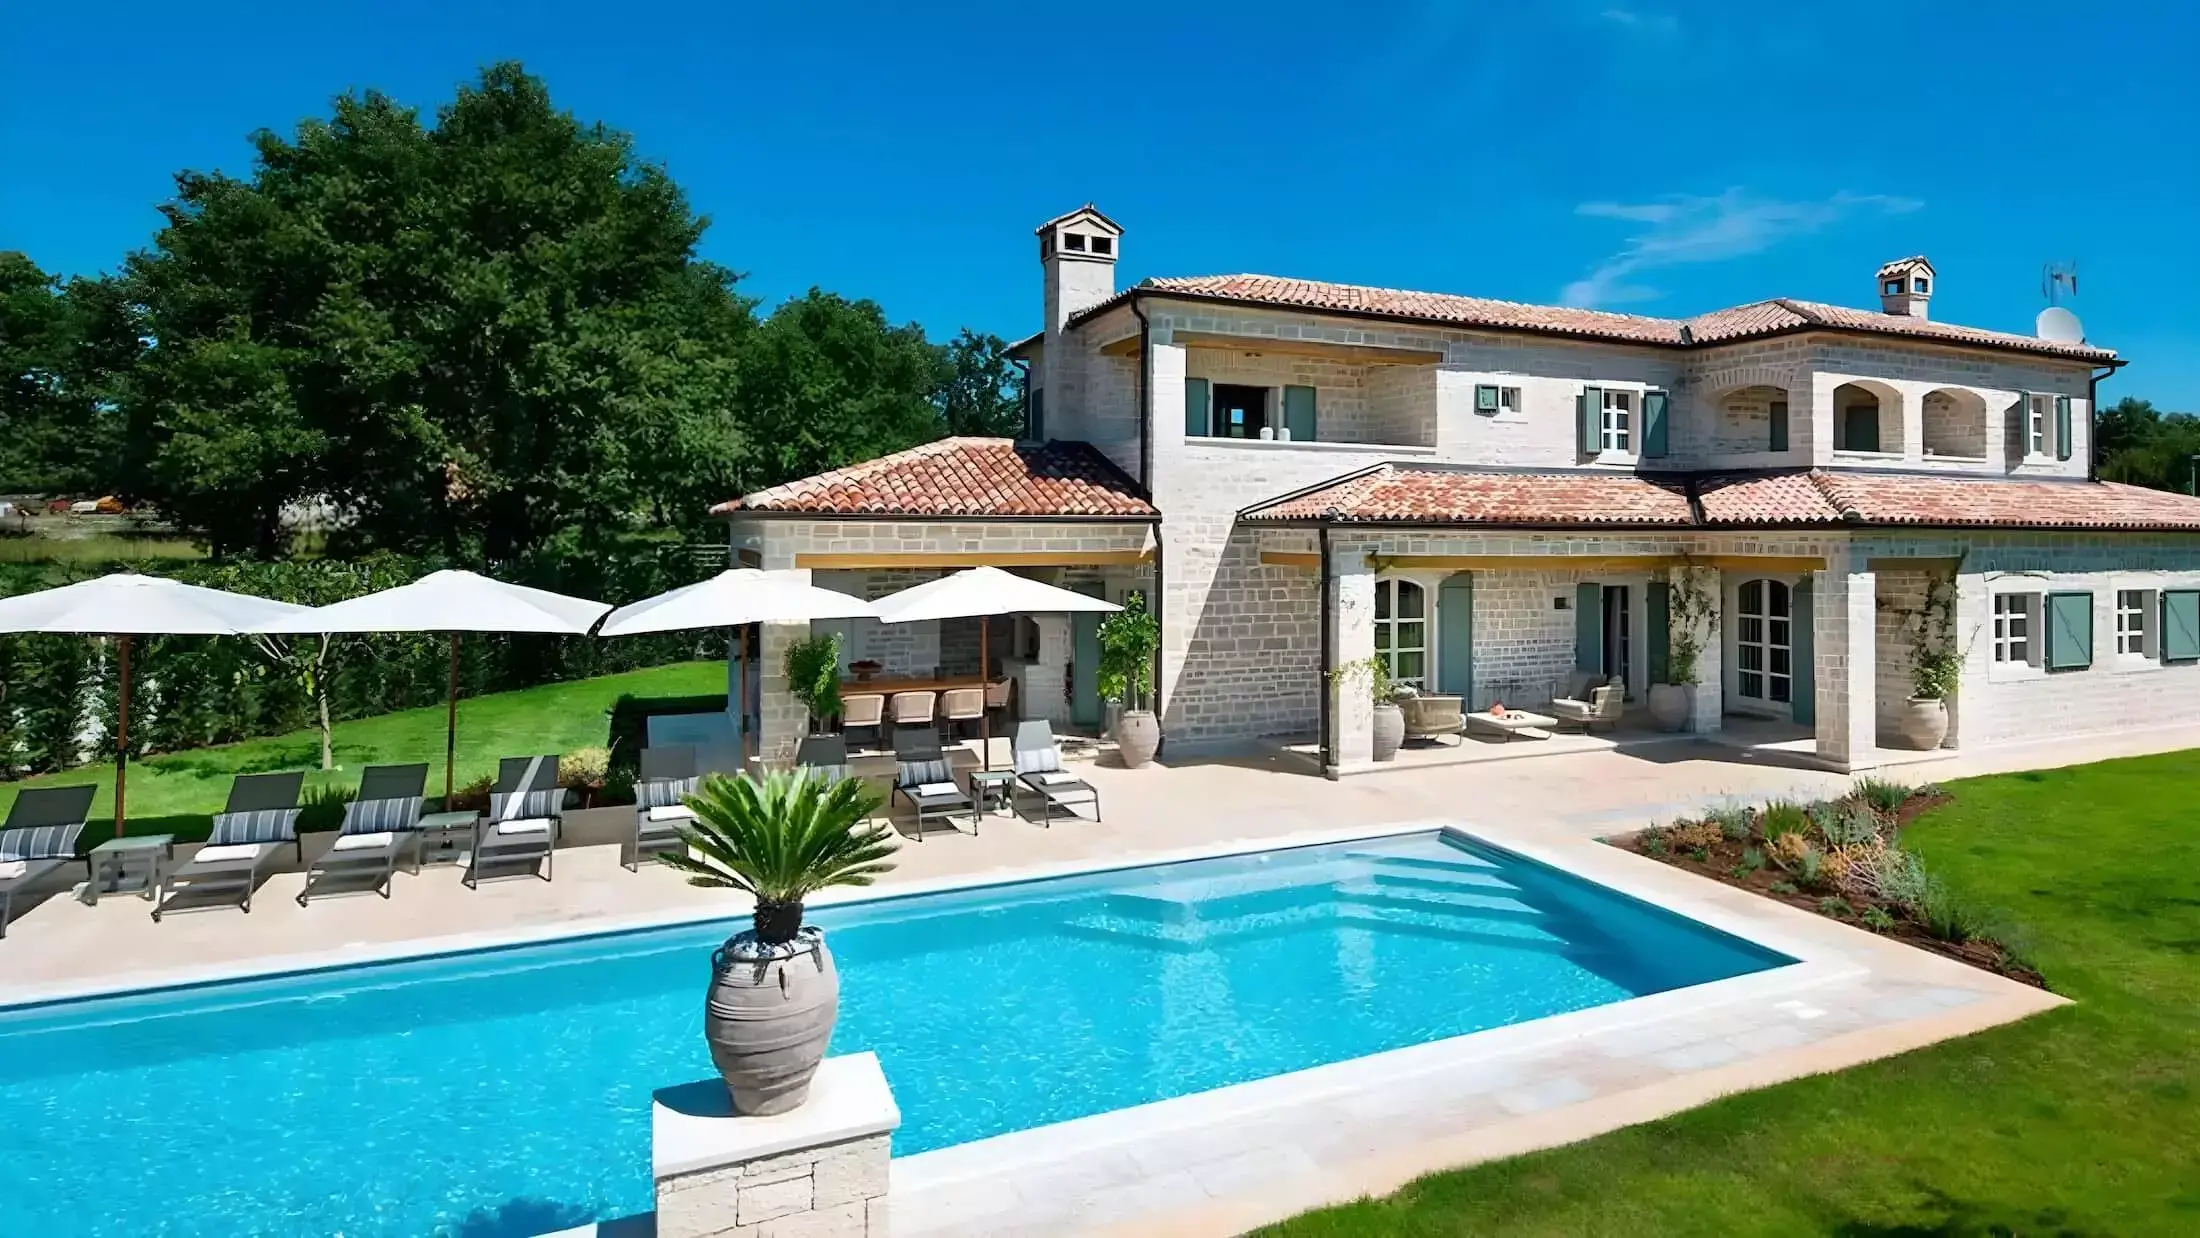 Villa / Haus mit Pool in Kroatien und IstrienWundervolle Villa in Istrien - Die schönsten Immobilien in Kroatien & Istrien